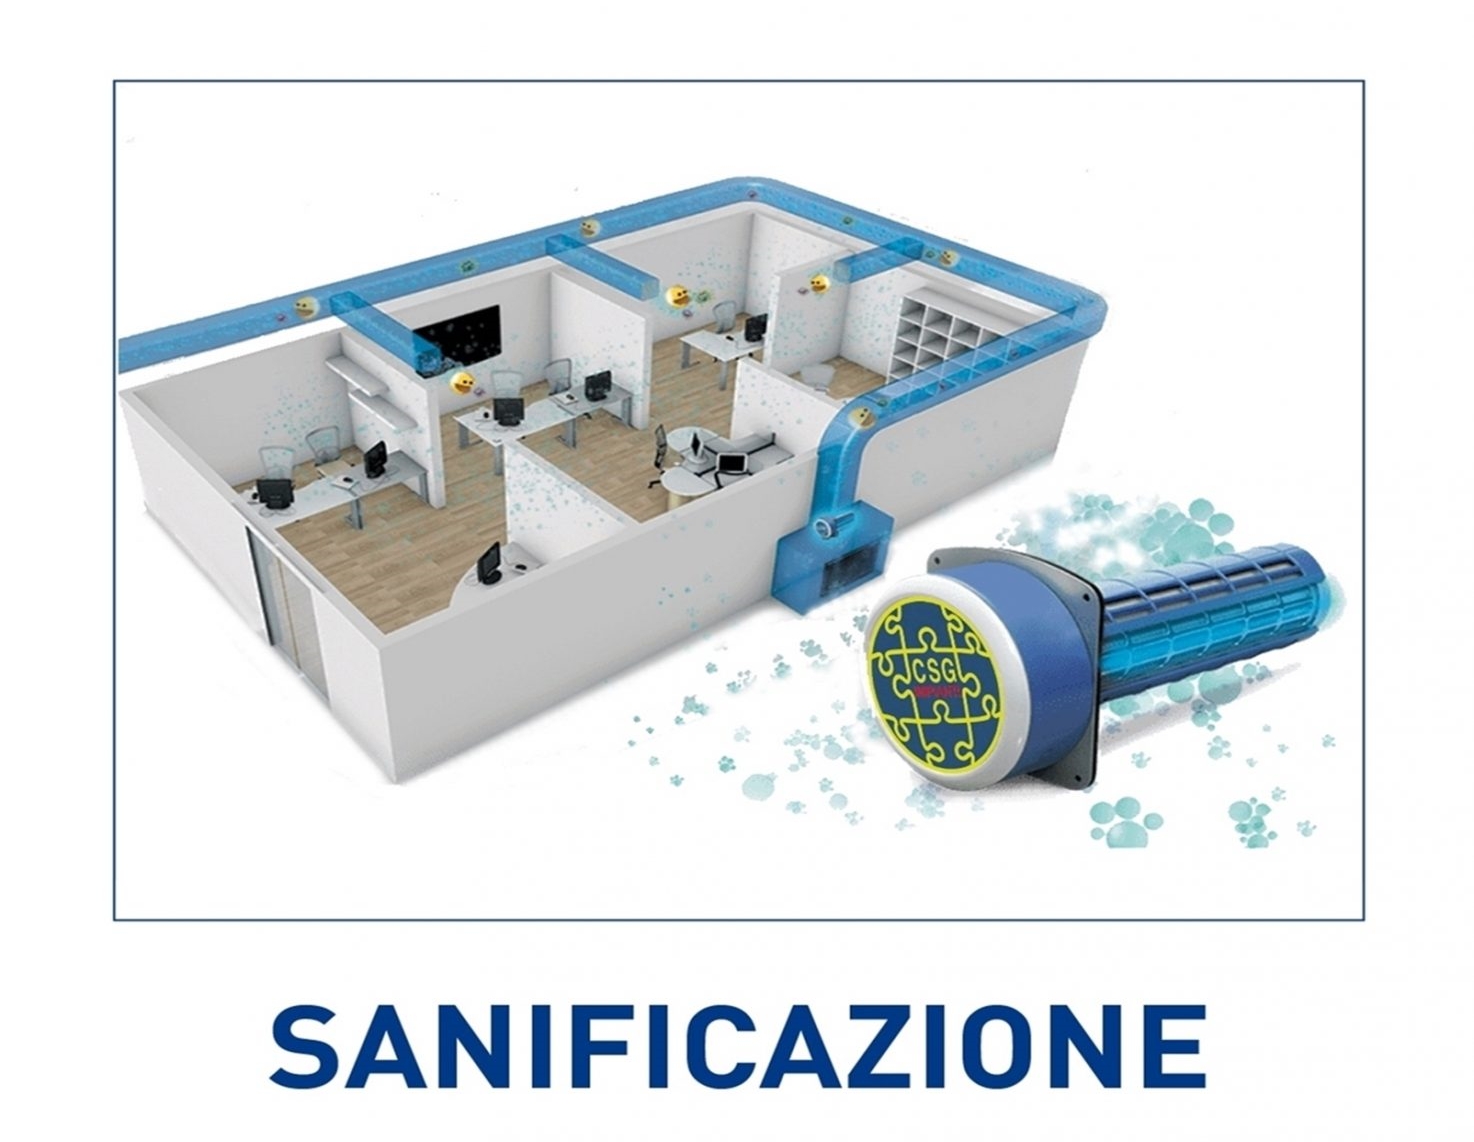 <p style="text-align: center;">Impianti Canalizzati Panasonic Milano